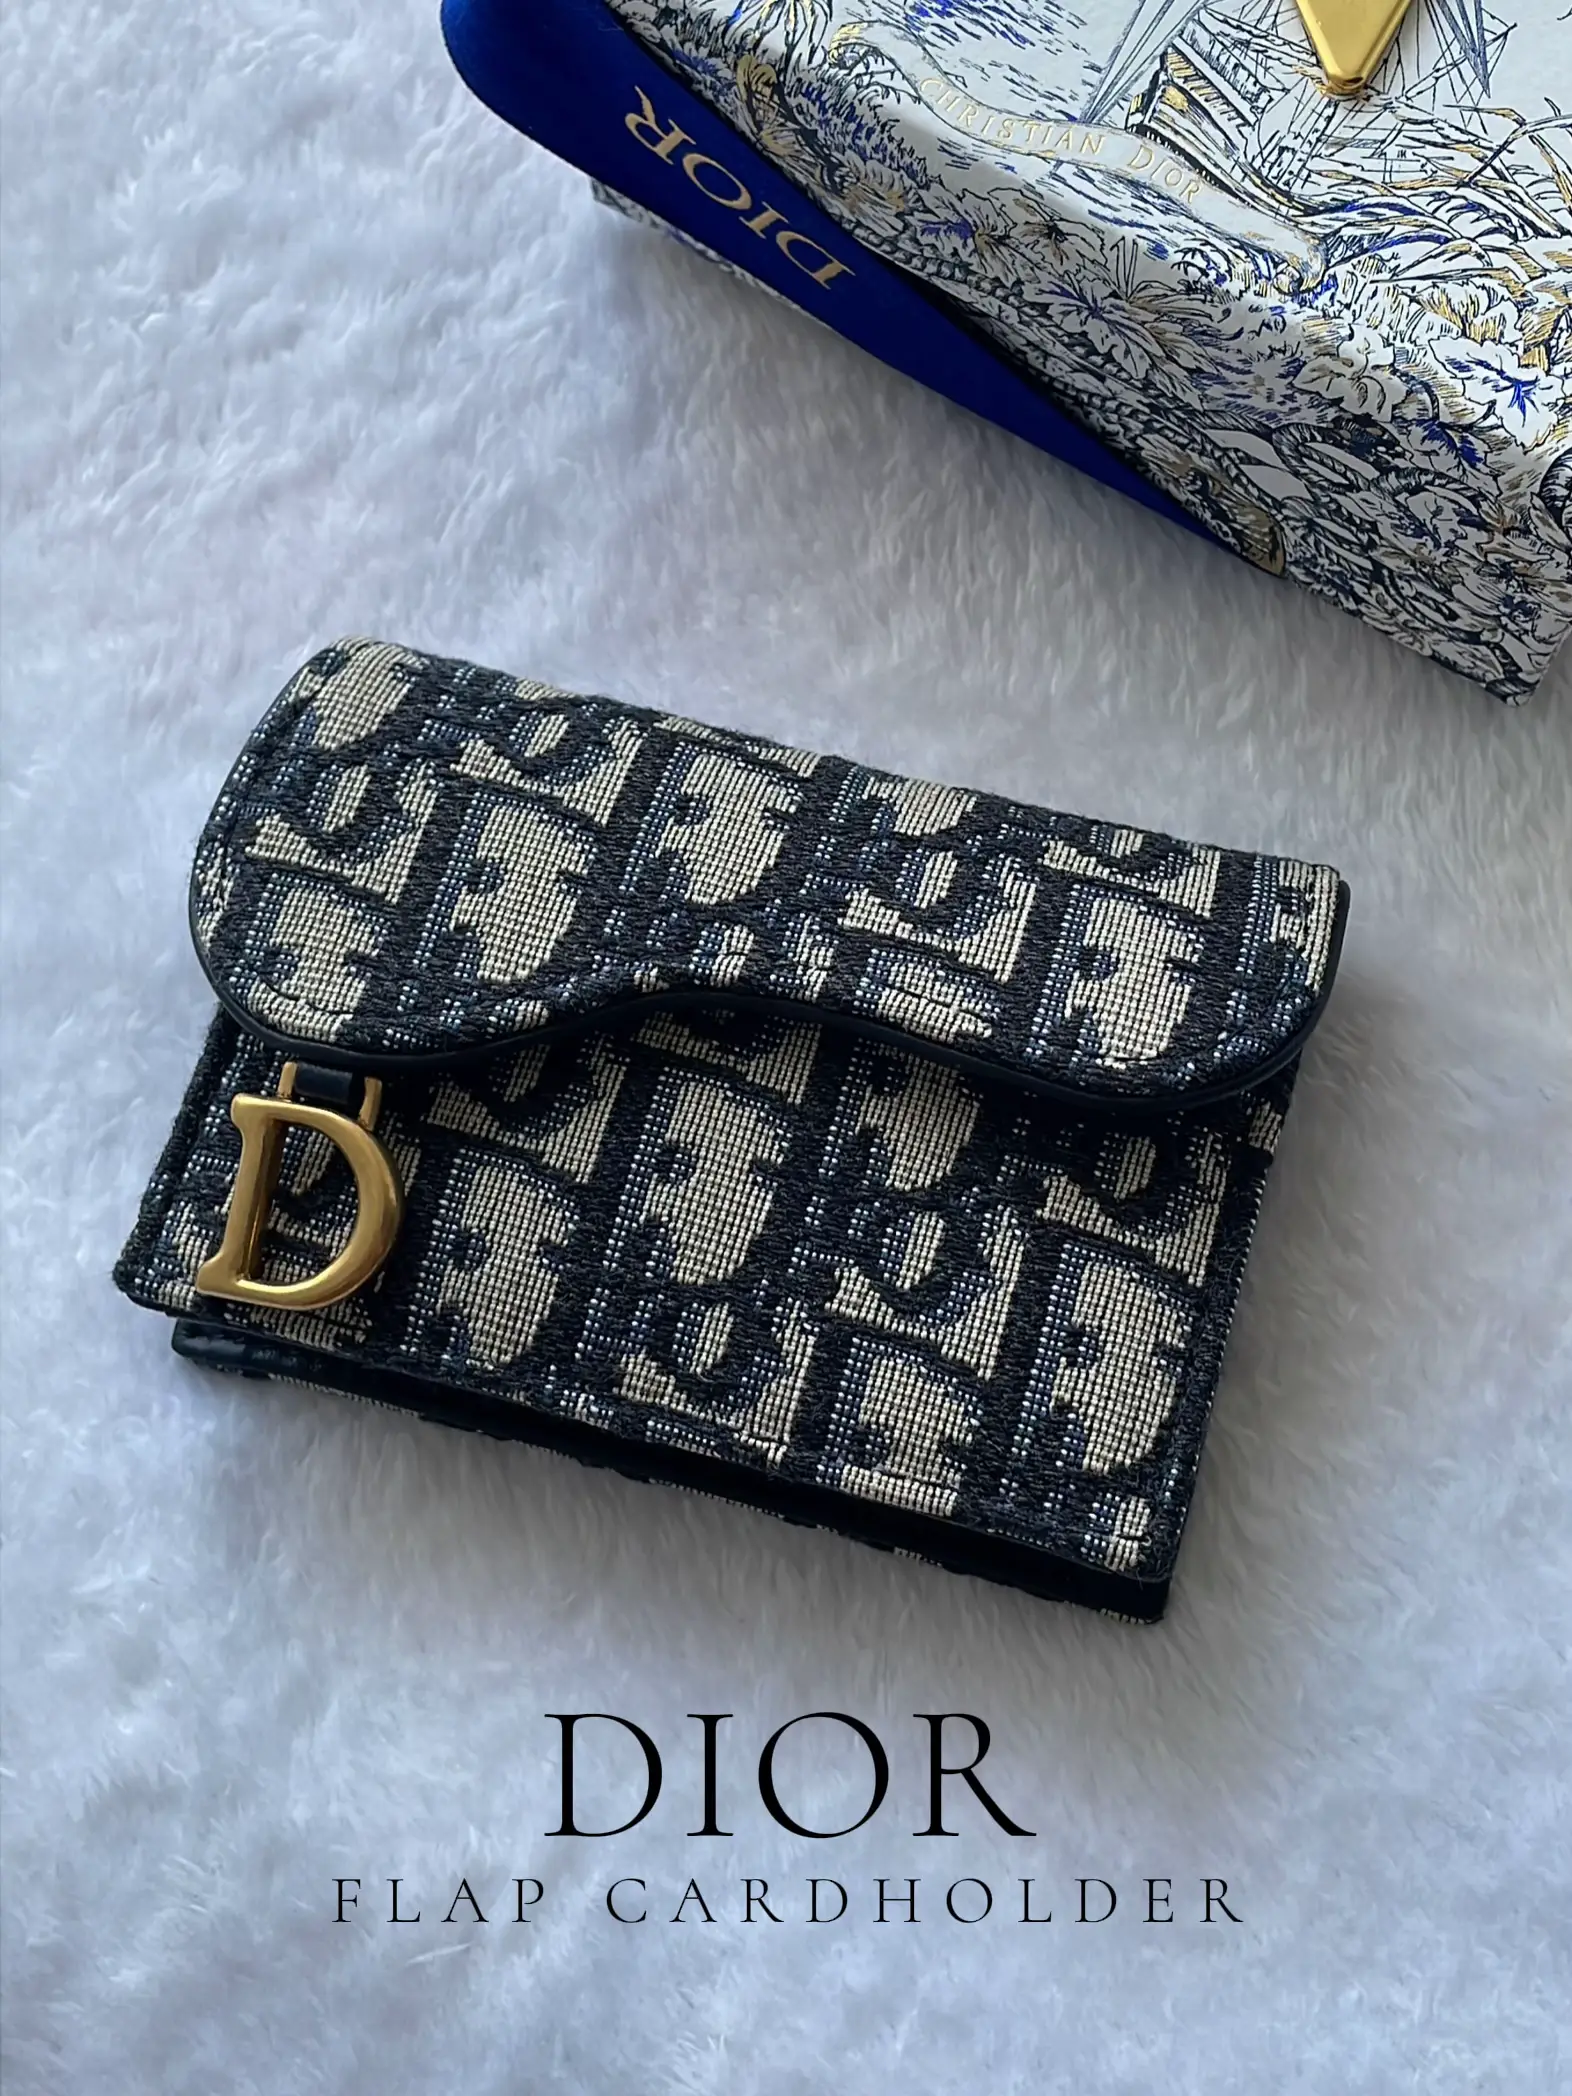 お土産・買い物 Dior SADDLEフラップカードホルダー - 小物